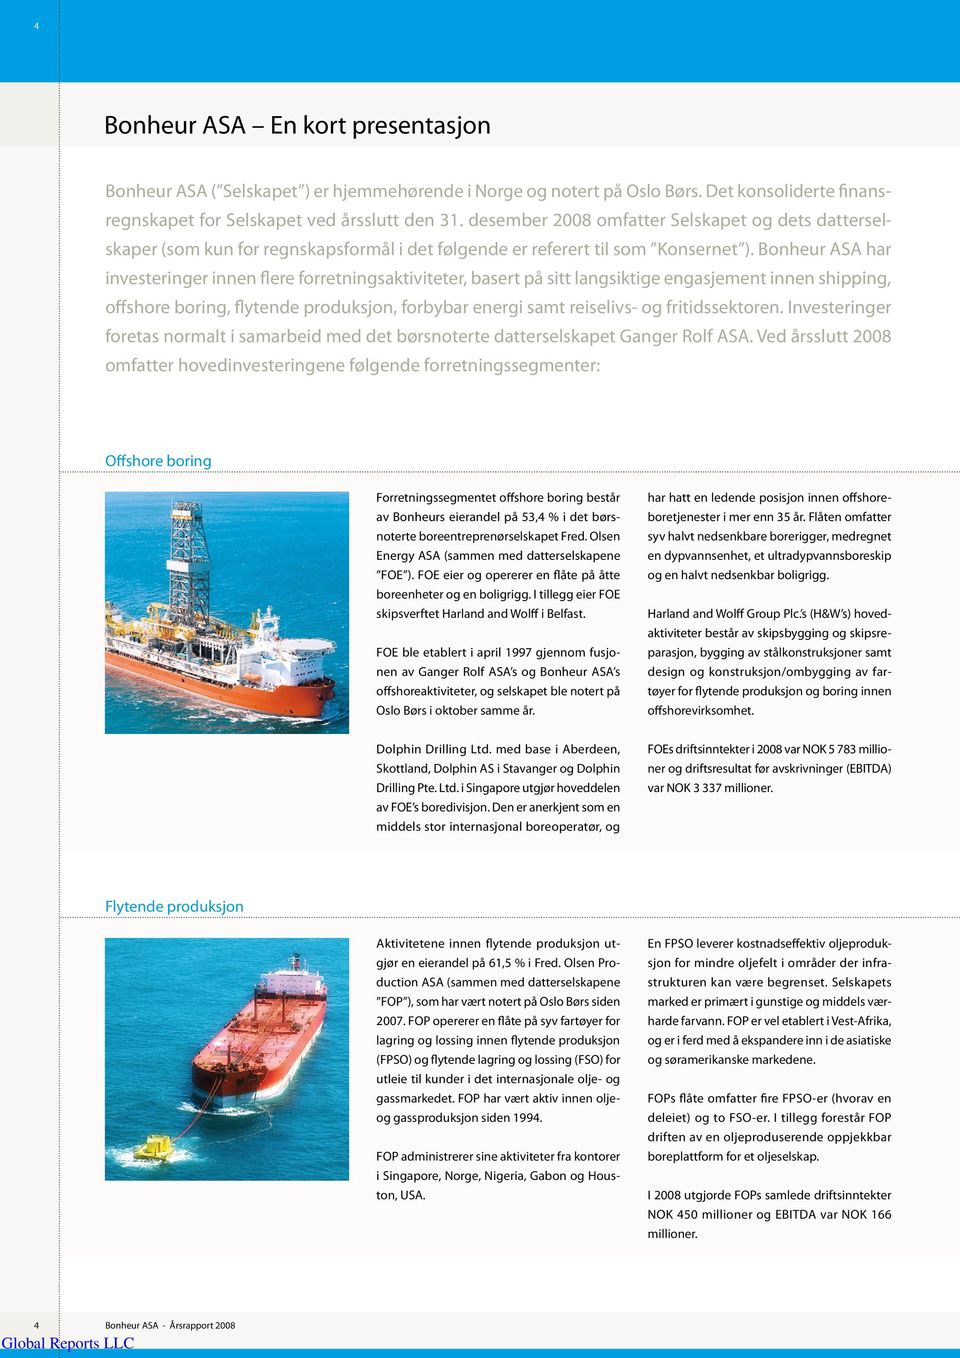 Bonheur ASA har investeringer innen flere forretningsaktiviteter, basert på sitt langsiktige engasjement innen shipping, offshore boring, flytende produksjon, forbybar energi samt reiselivs- og